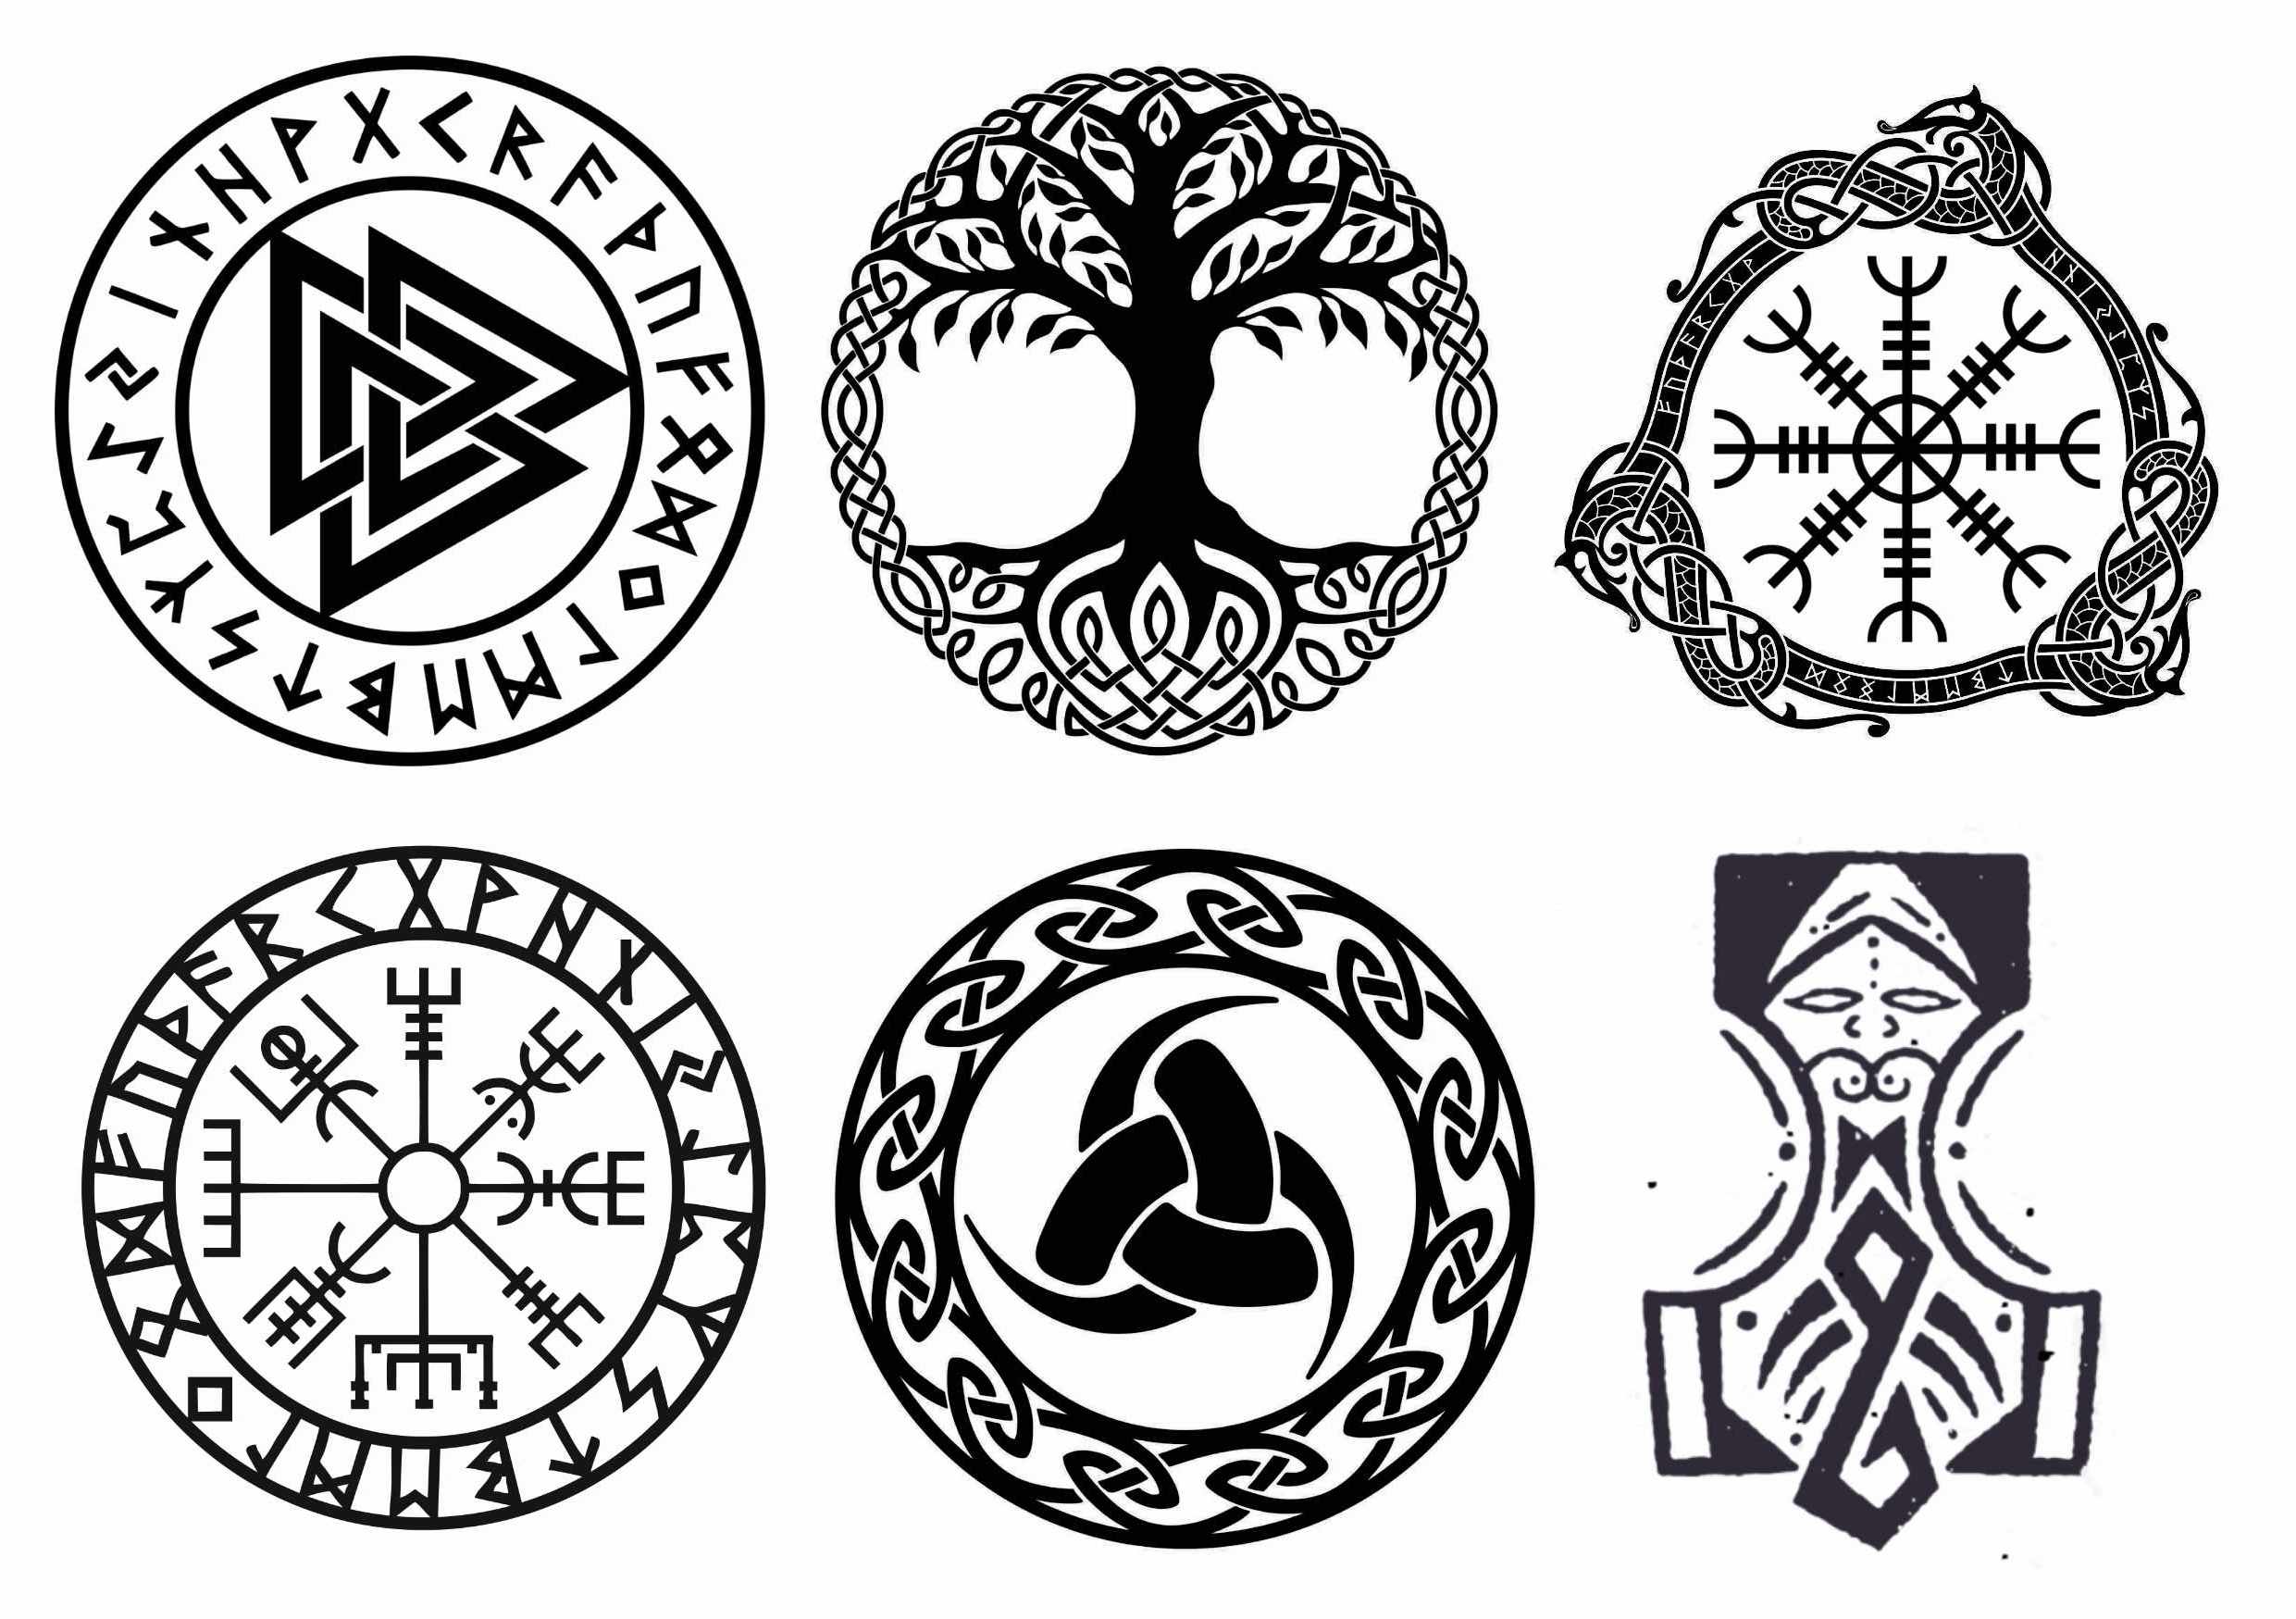 6 välkända viking symboler som fake tatueringar